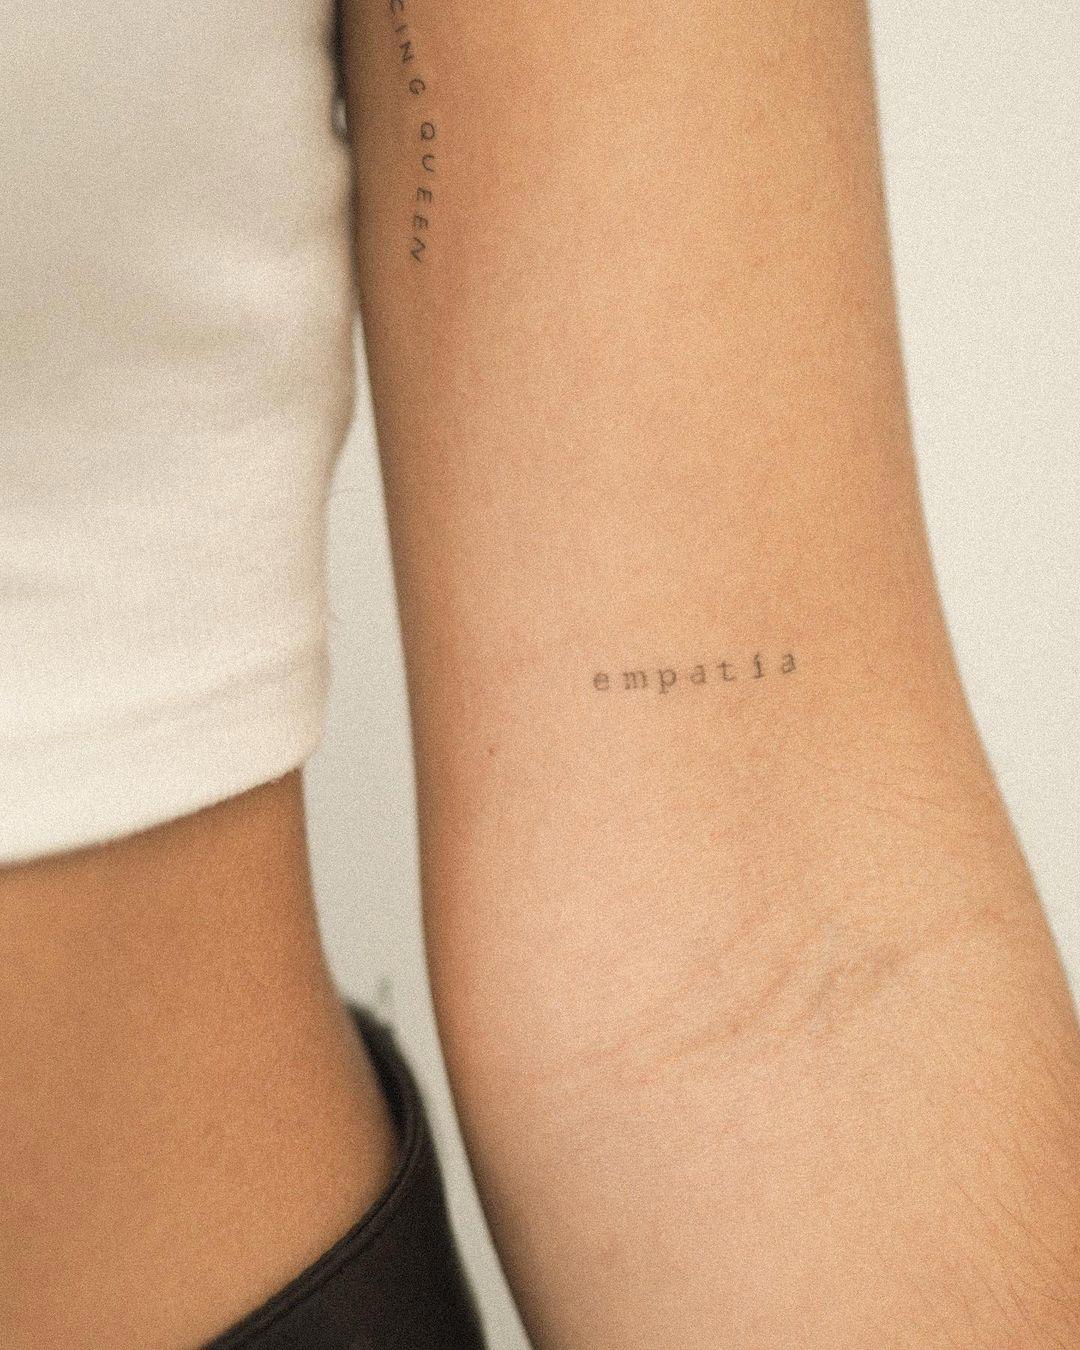 Tatuaje minimalista de palabra en letra mecanográfica